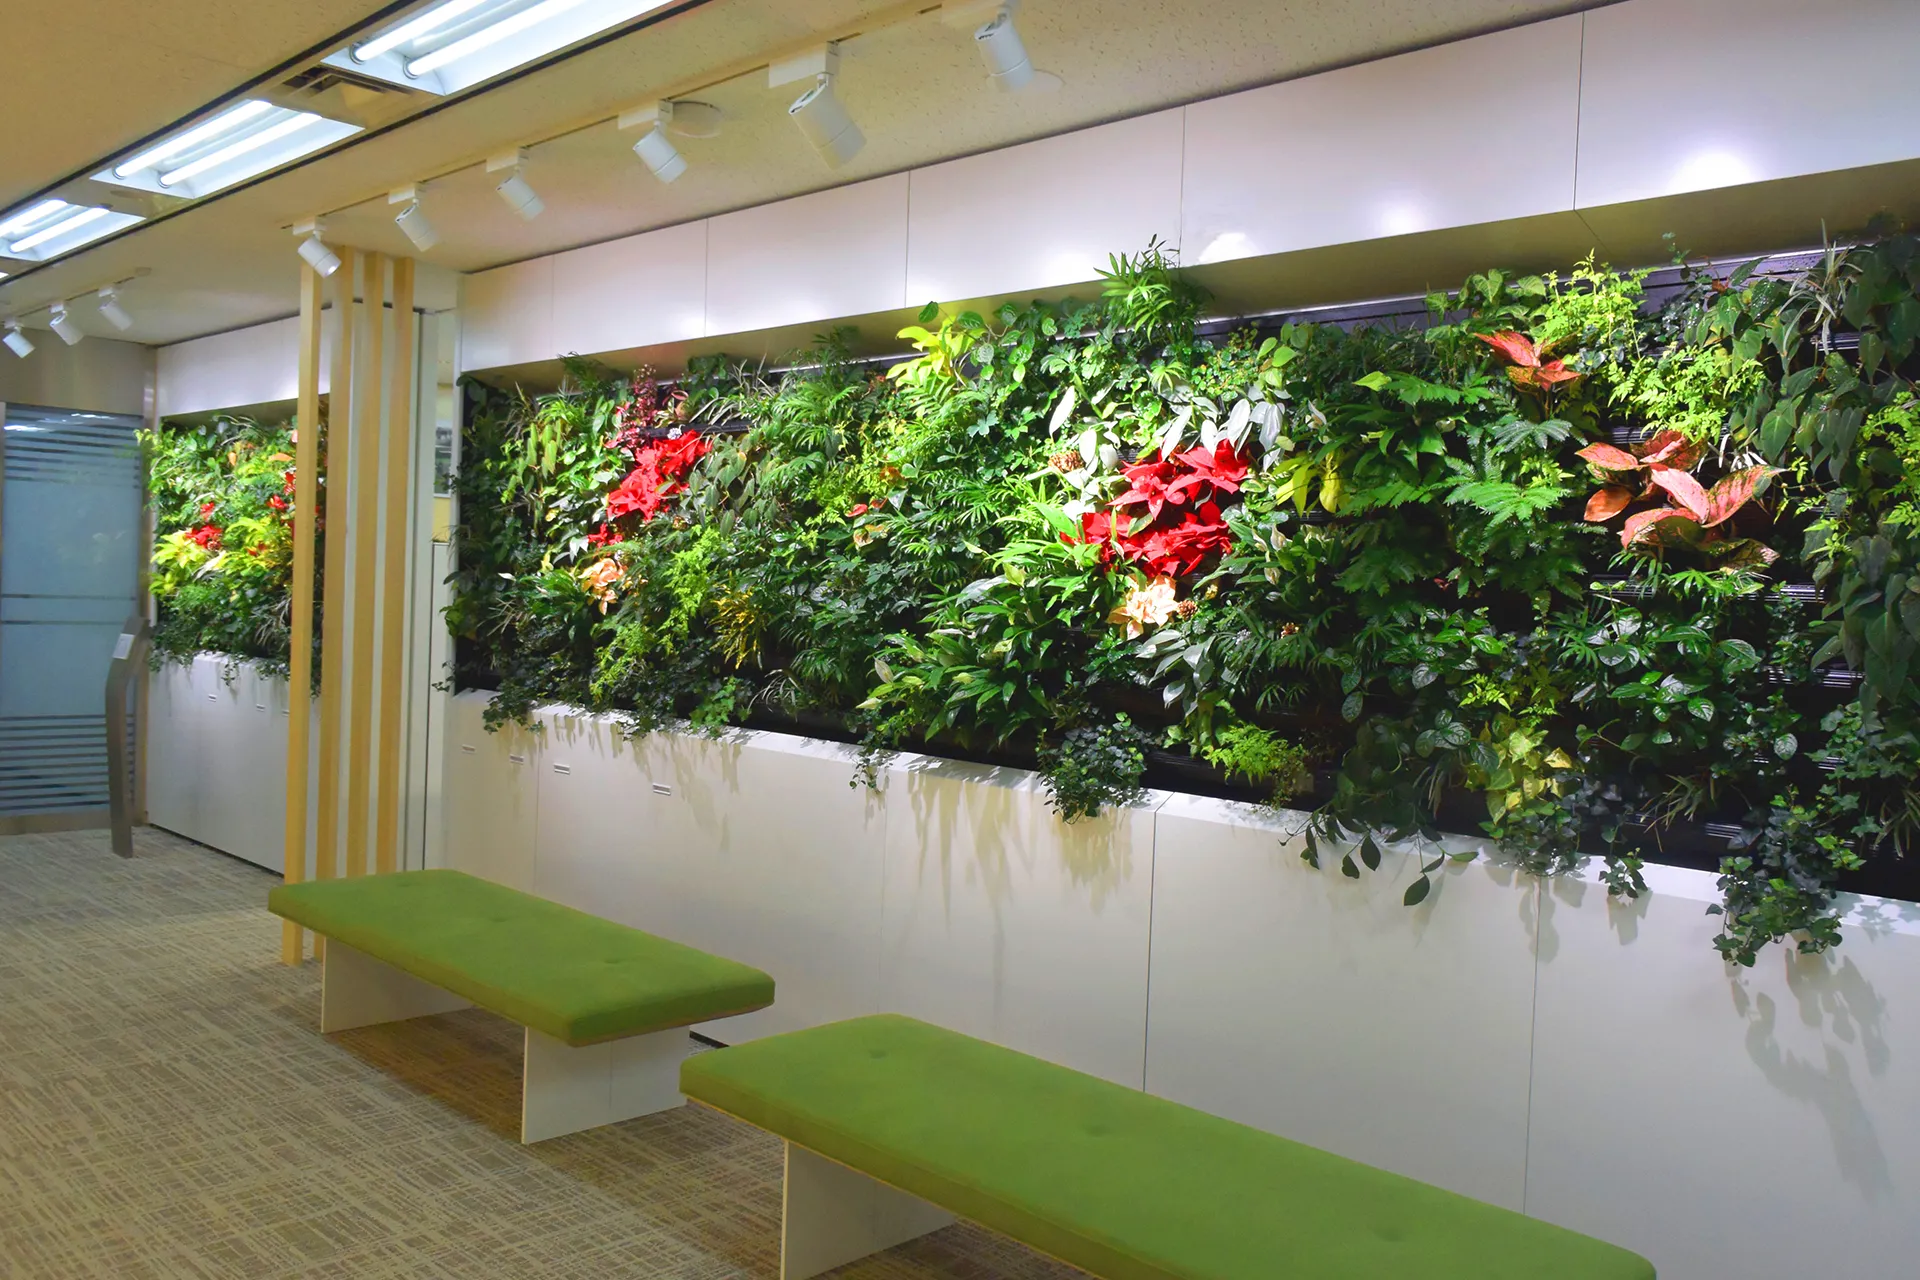 東鉄工業本社エントランス室内壁面緑化のサムネイル画像です